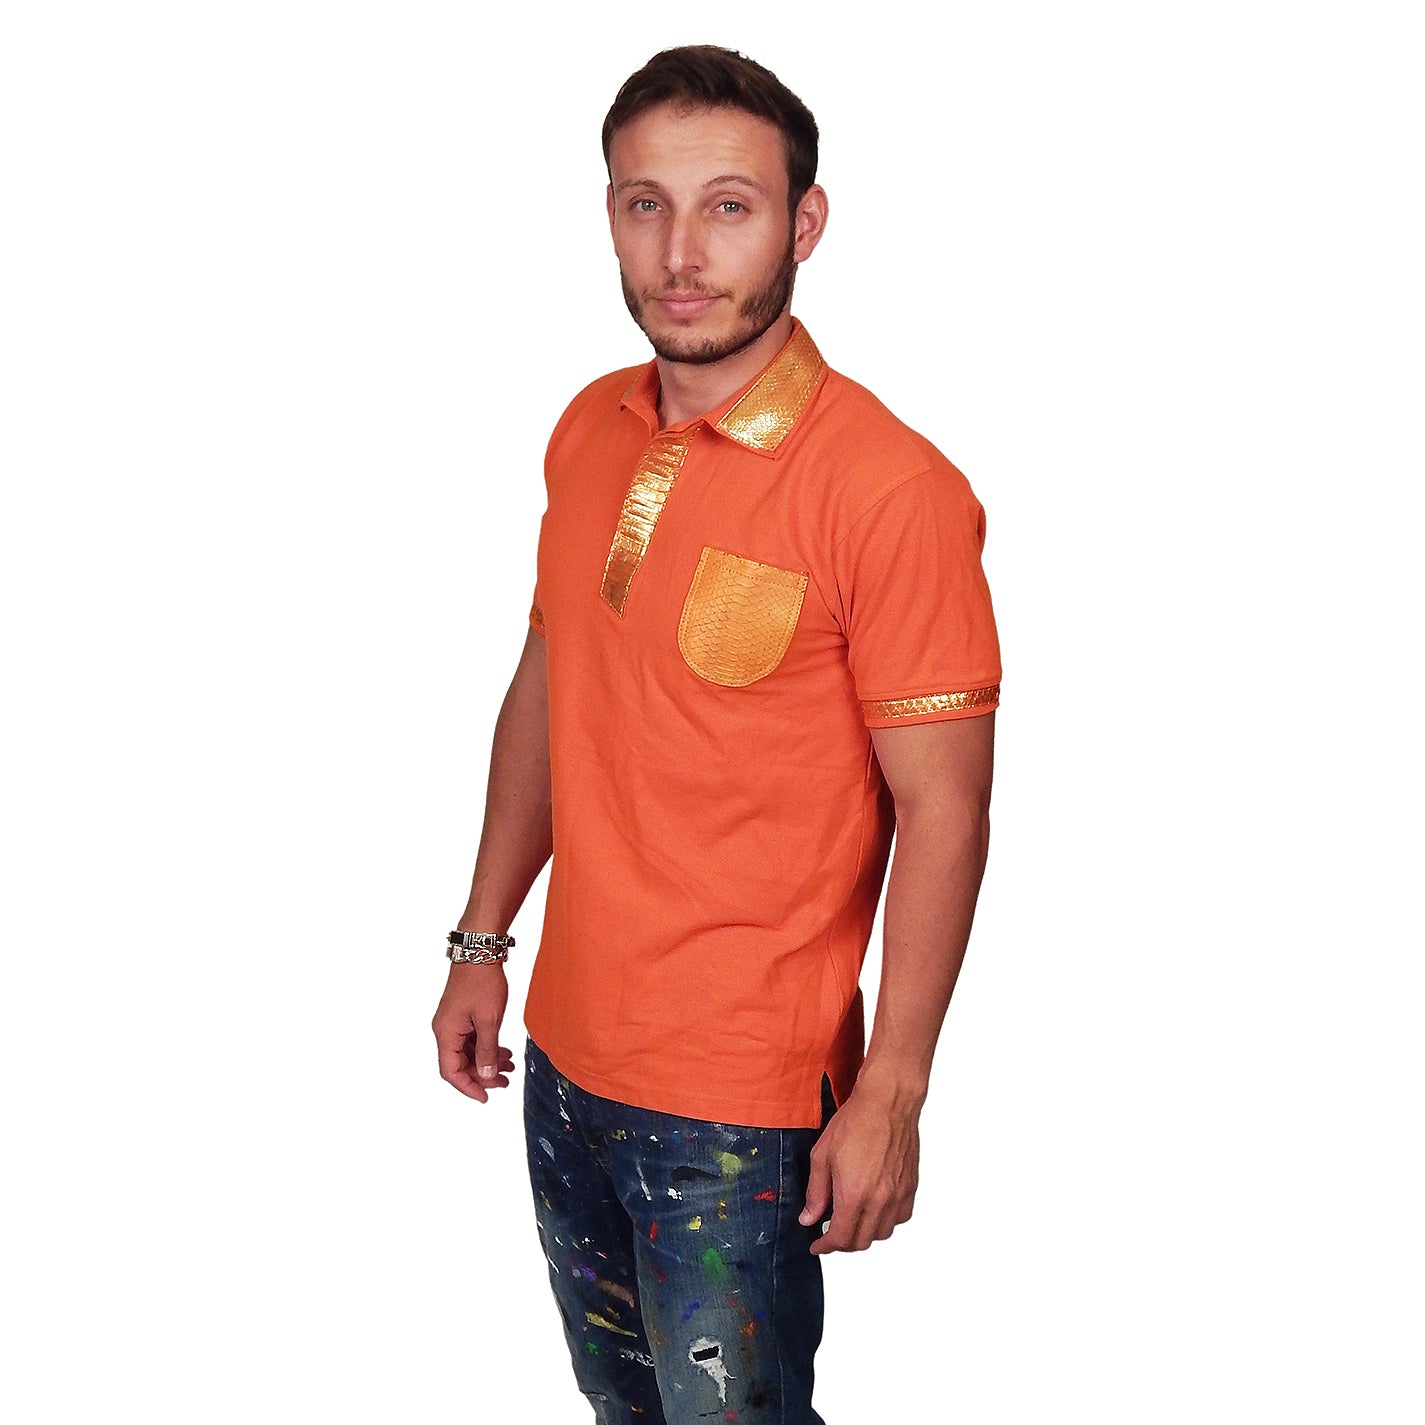 SKINZ by Anton - Orange Polo with Metallic Orange Python Accents